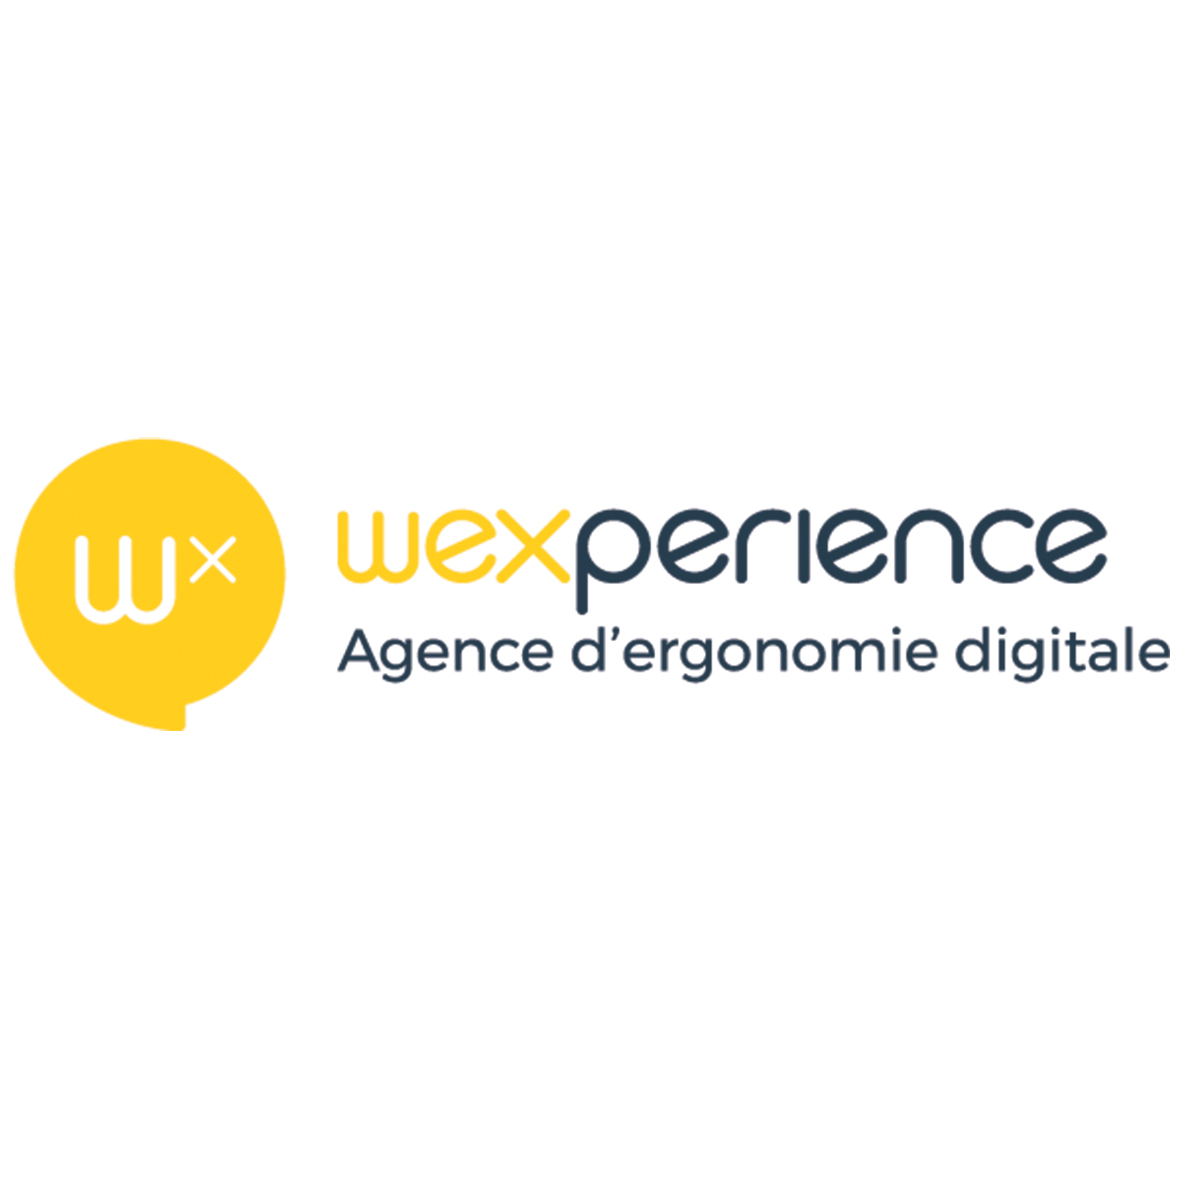 wexperience - etowline